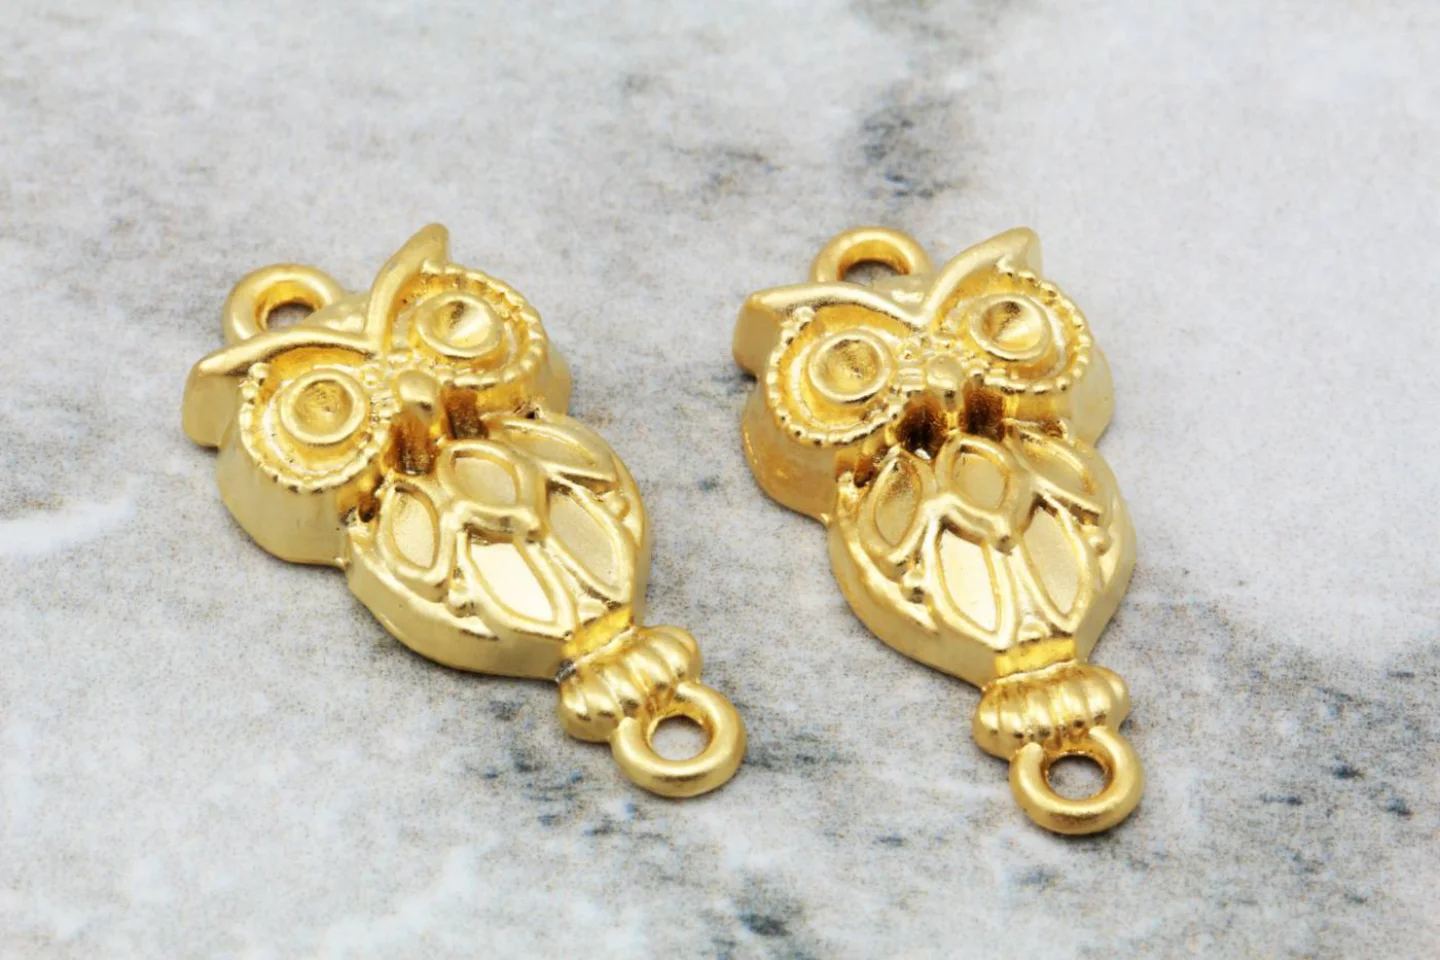 gold-plated-big-metal-owl-pendant-charms.